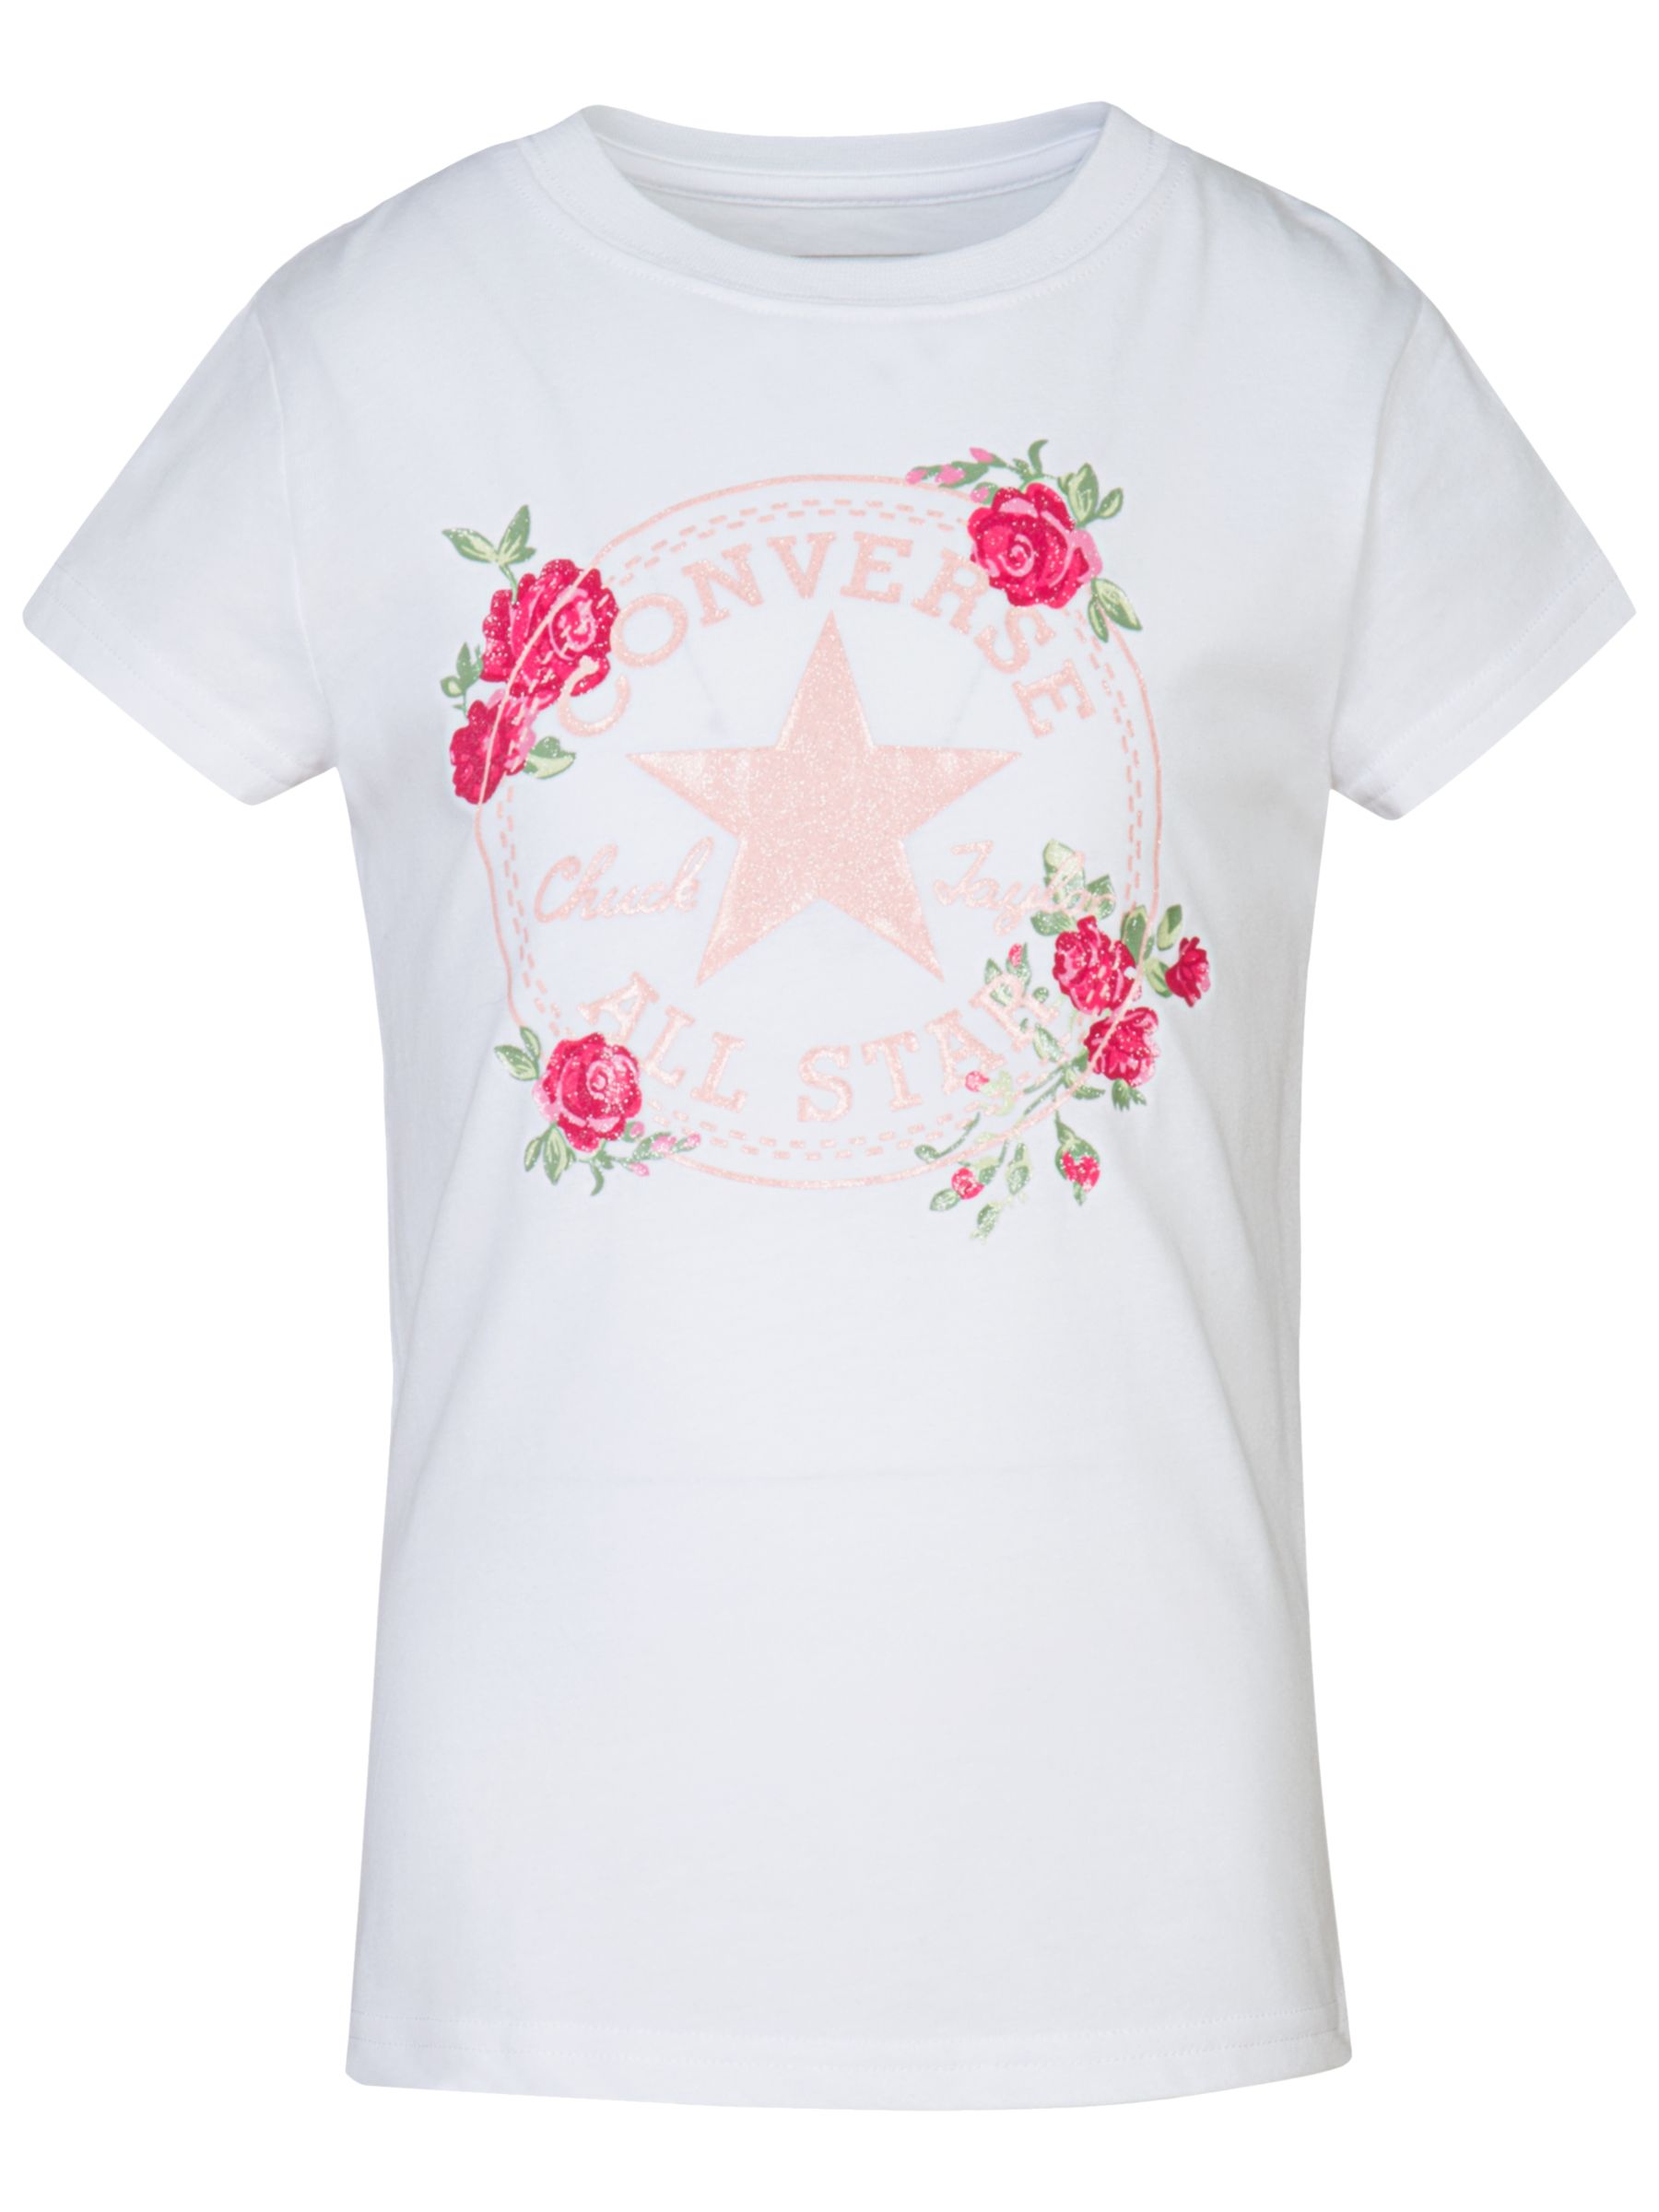 Converse Girls' Roses Logo Print T-Shirt, White at John Lewis & Partners